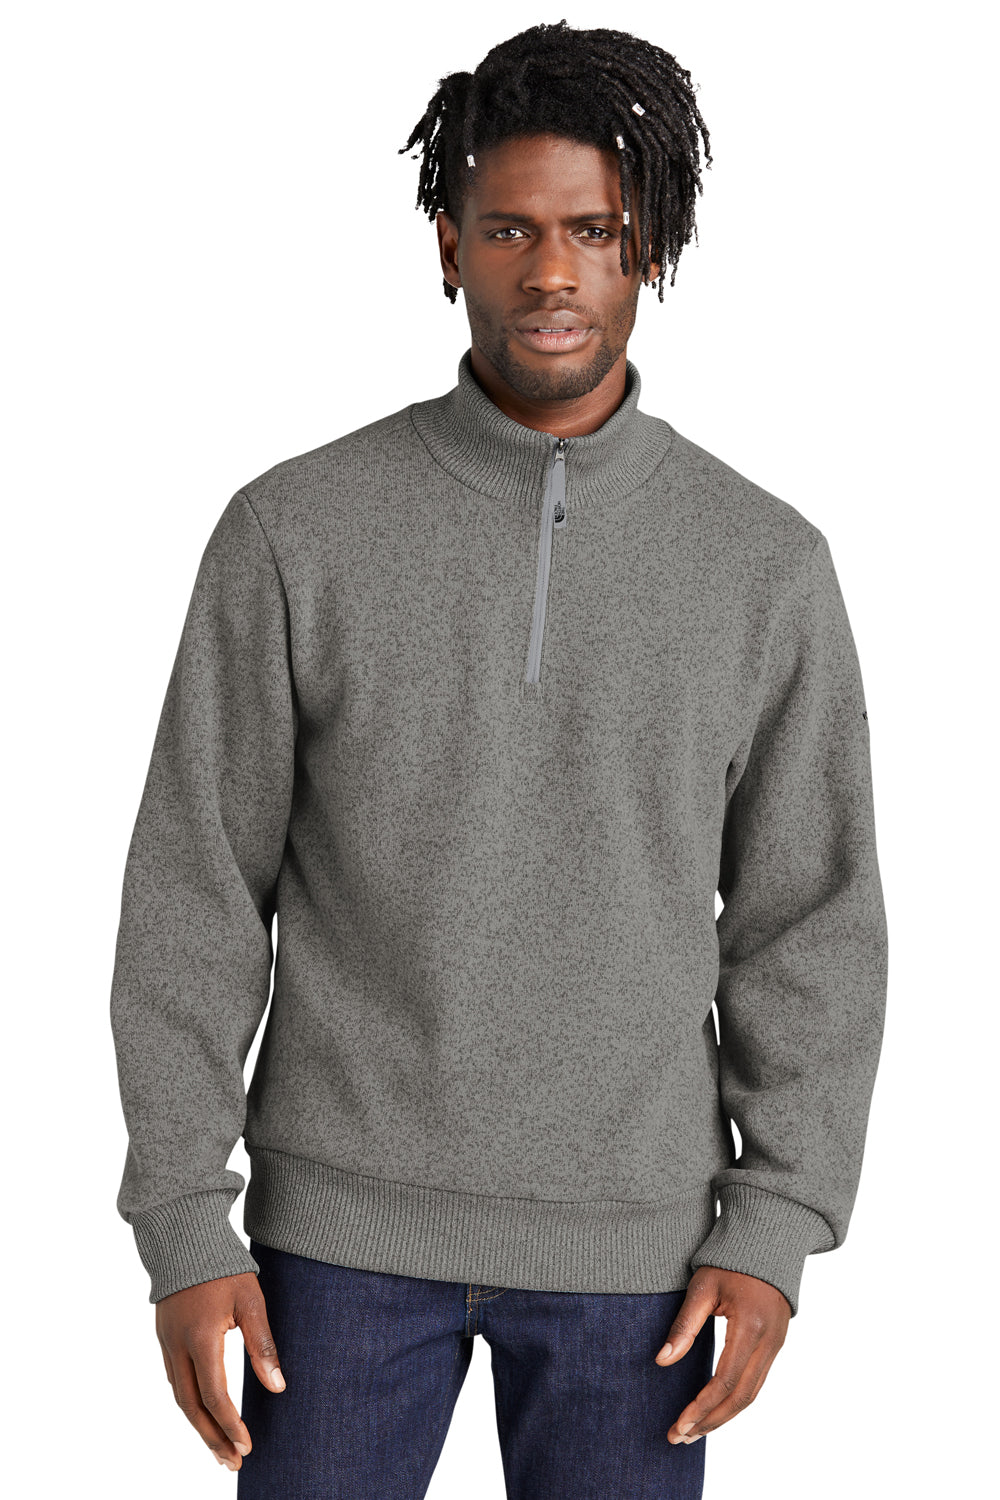 The North Face NF0A5ISE 1/4 Zip Sweater Fleece Sweatshirt Heather Medium Grey Front